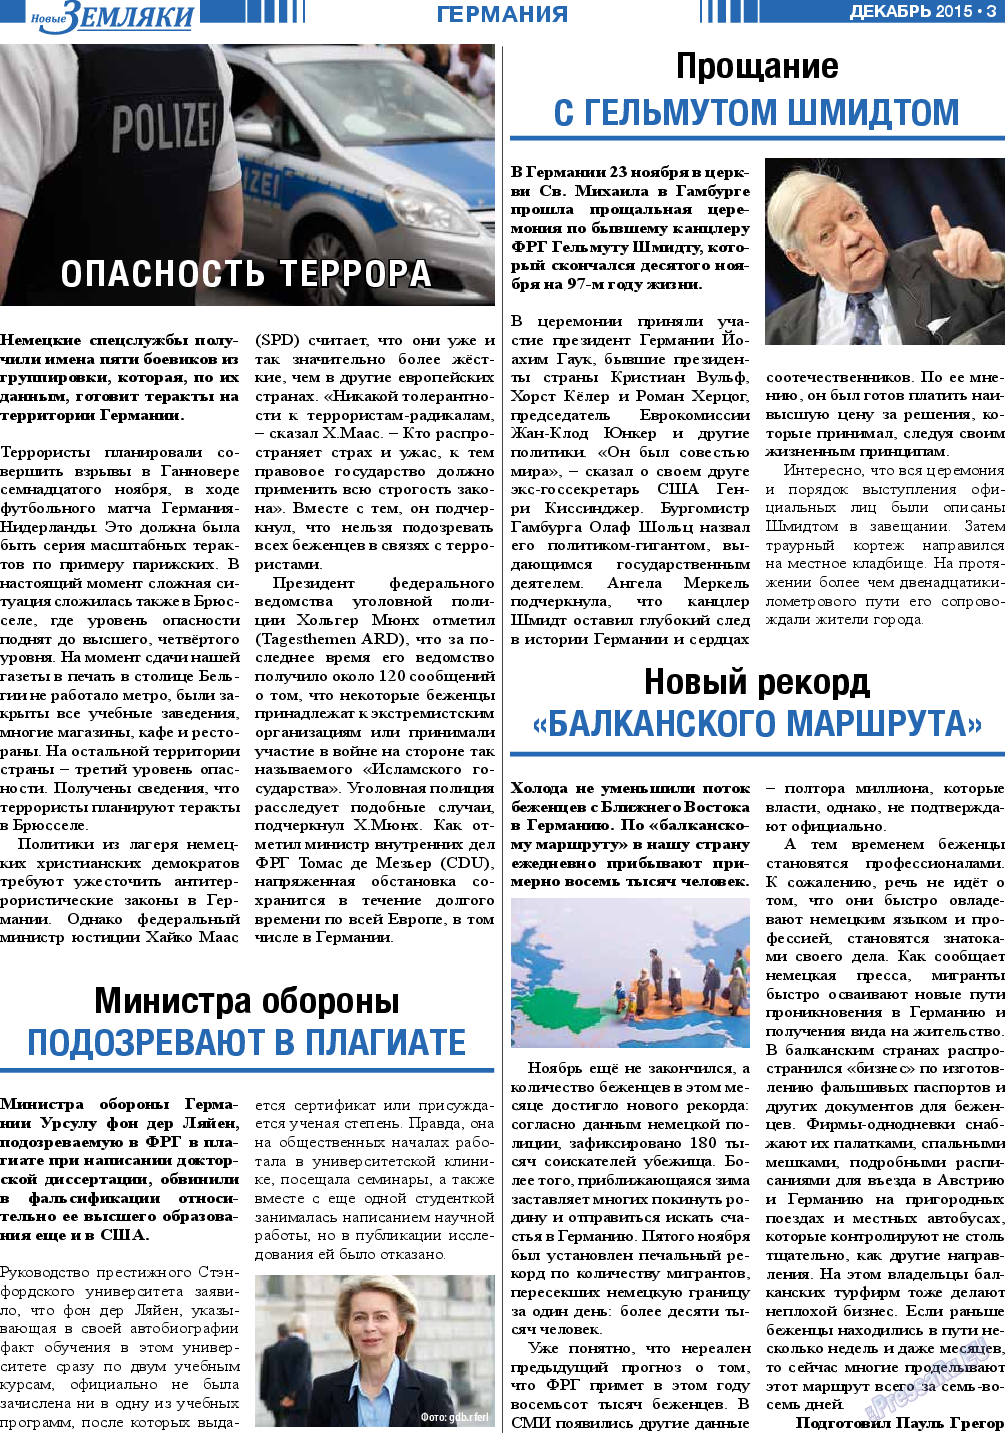 Новые Земляки, газета. 2015 №12 стр.3